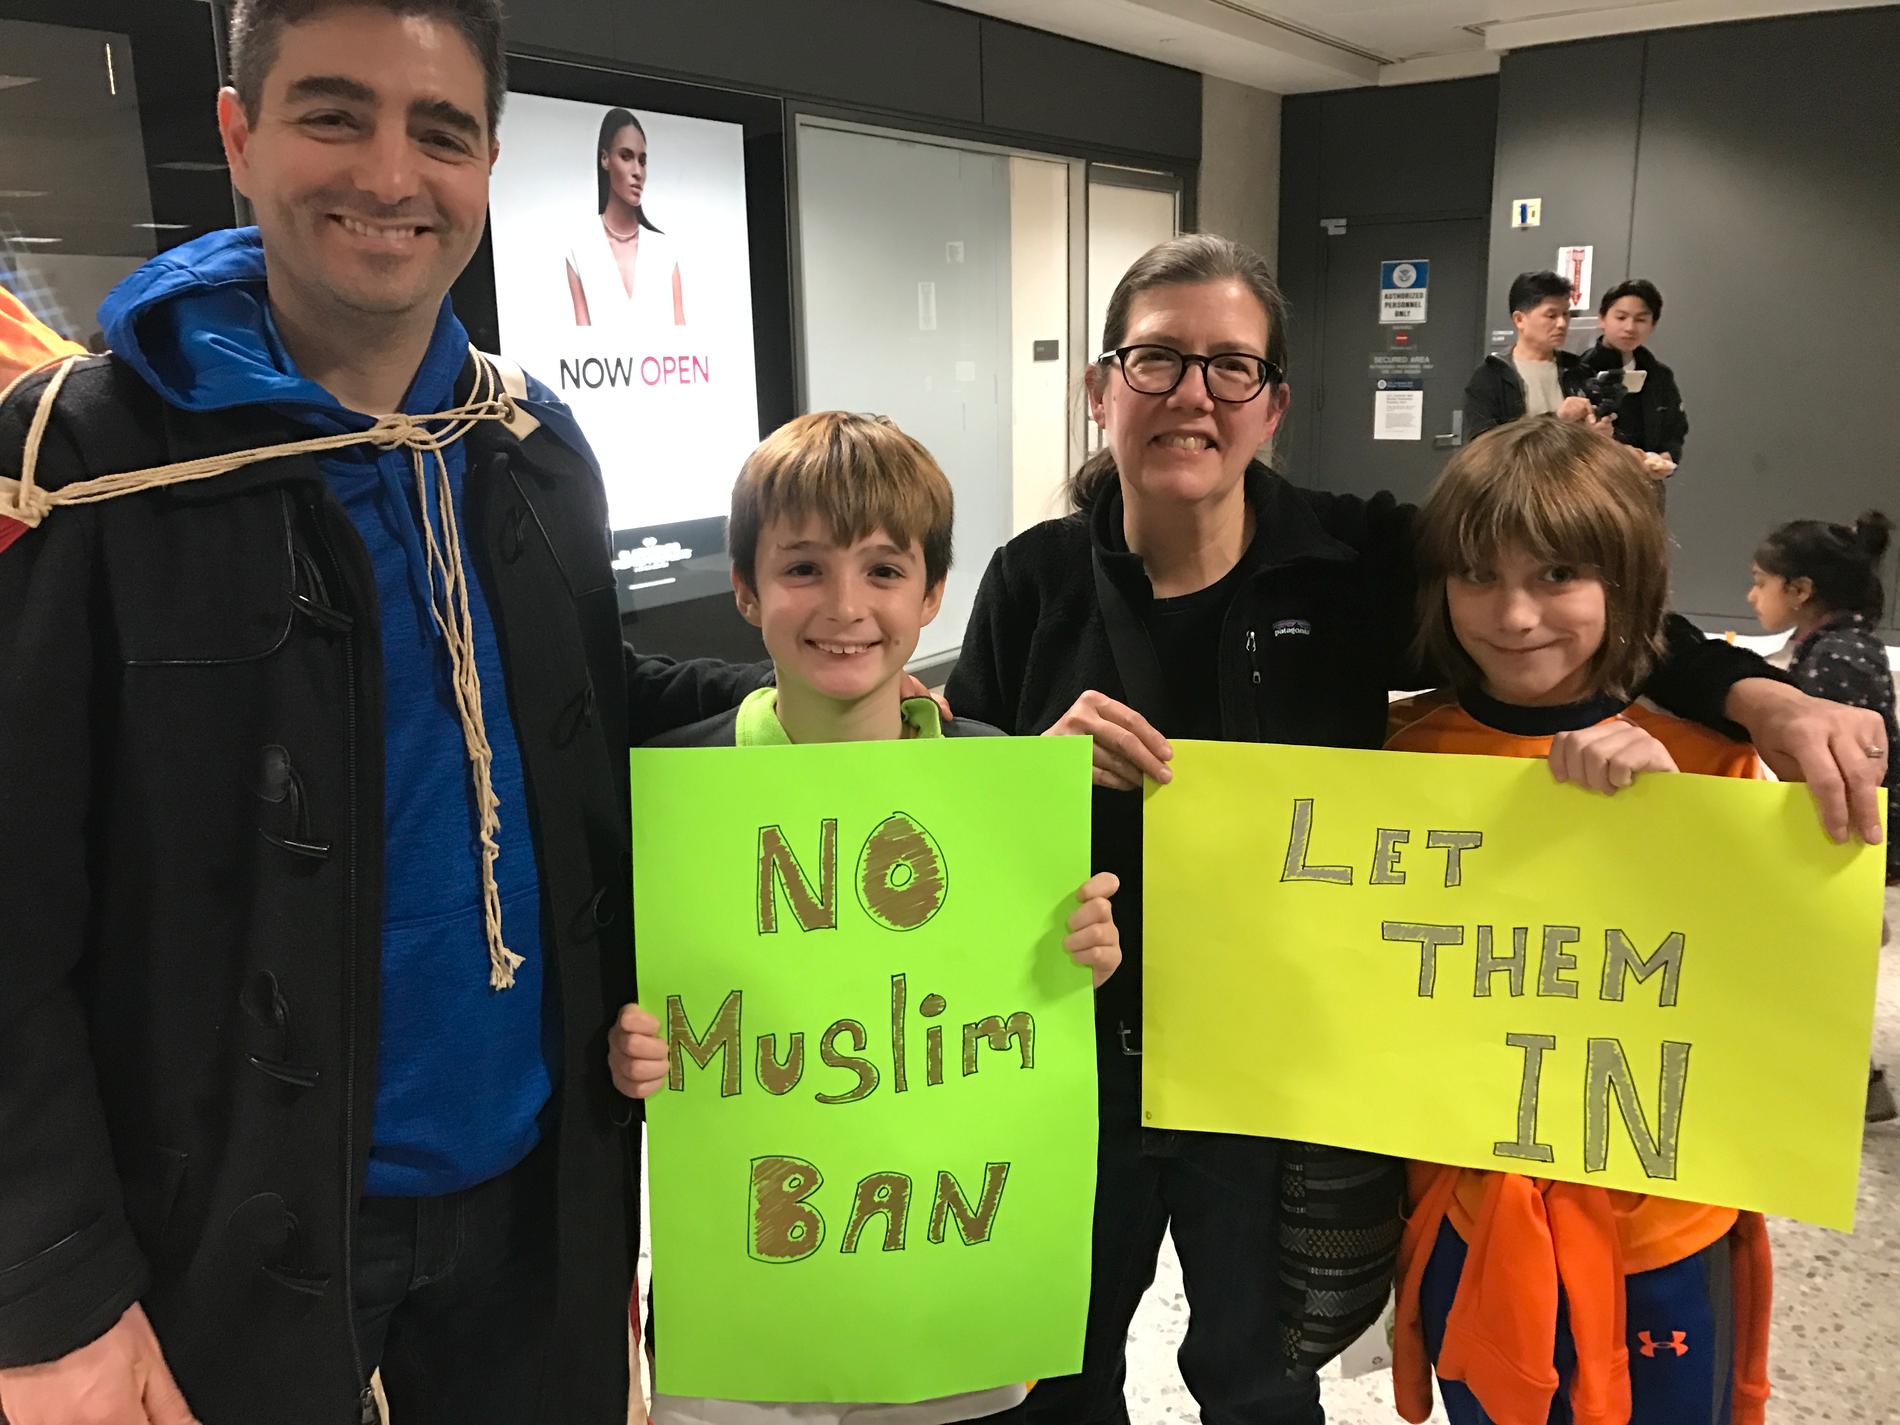 Lucas Wall demonstrerar tillsammans med kompisen Darla Haney, sonen Matias och dennes vän Ben Hubble. ”Nej till muslimförbudet” och ”Låt dem komma in”, står det på deras skyltar.